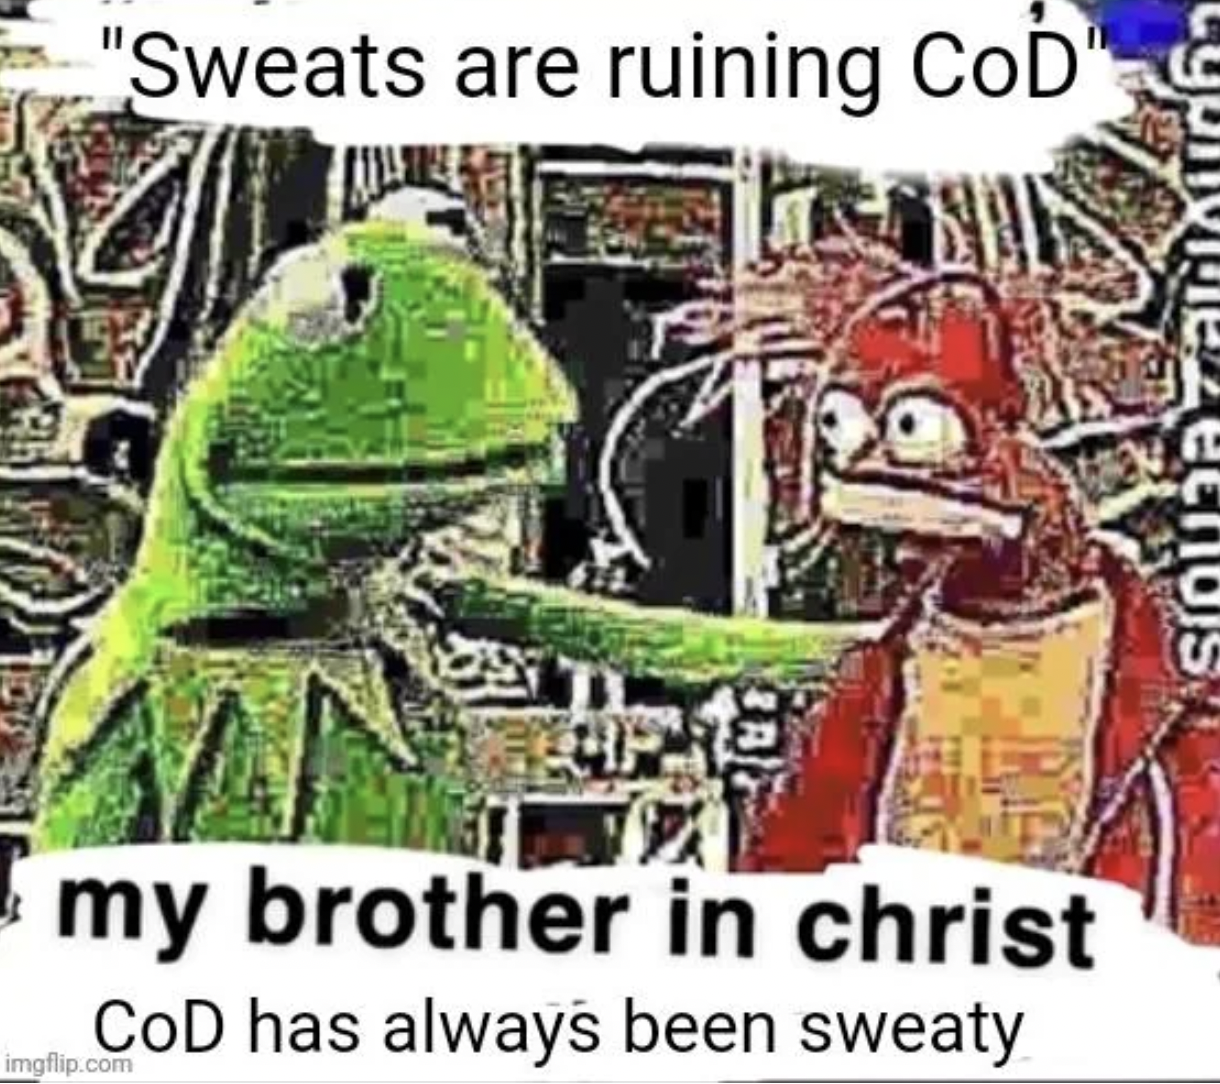 cartoon - "Sweats are ruining CoD" my brother in christ Cod has always been sweaty imgflip.com een